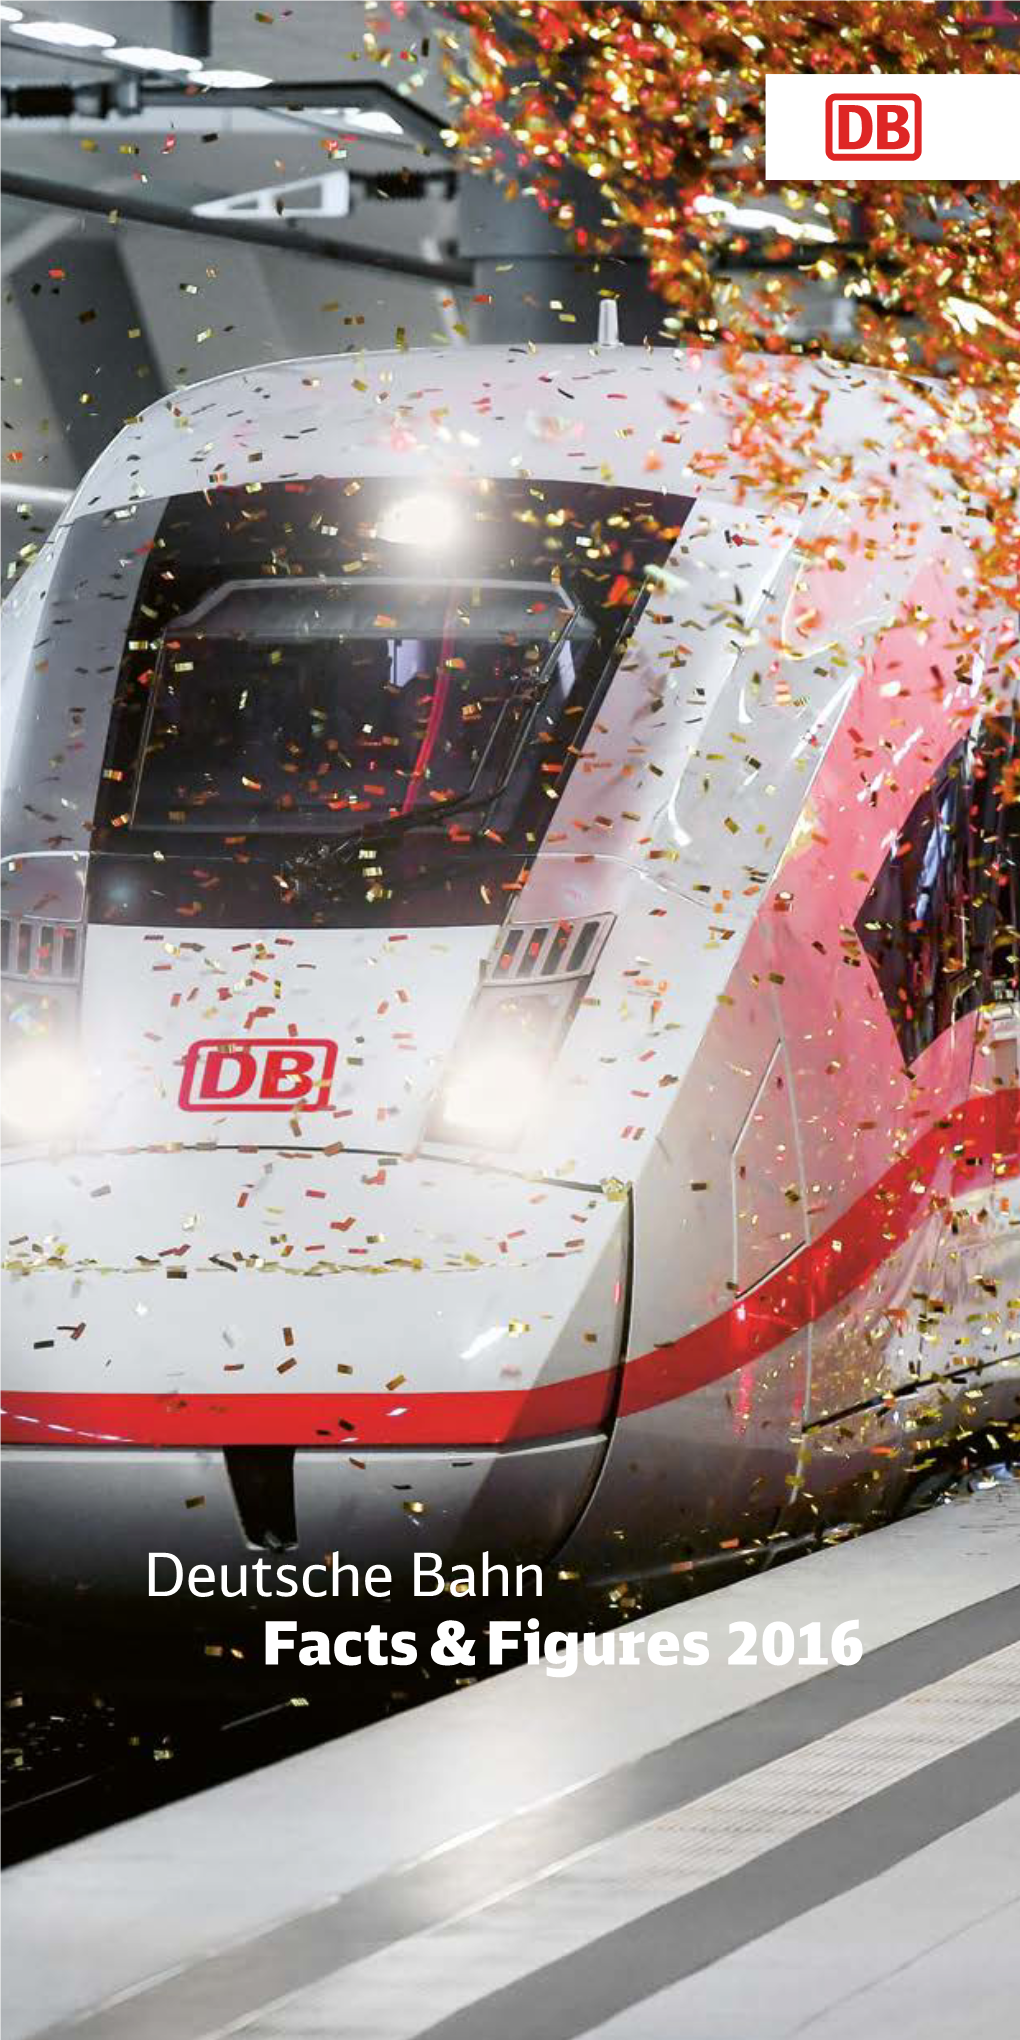 Deutsche Bahn Facts & Figures 2016